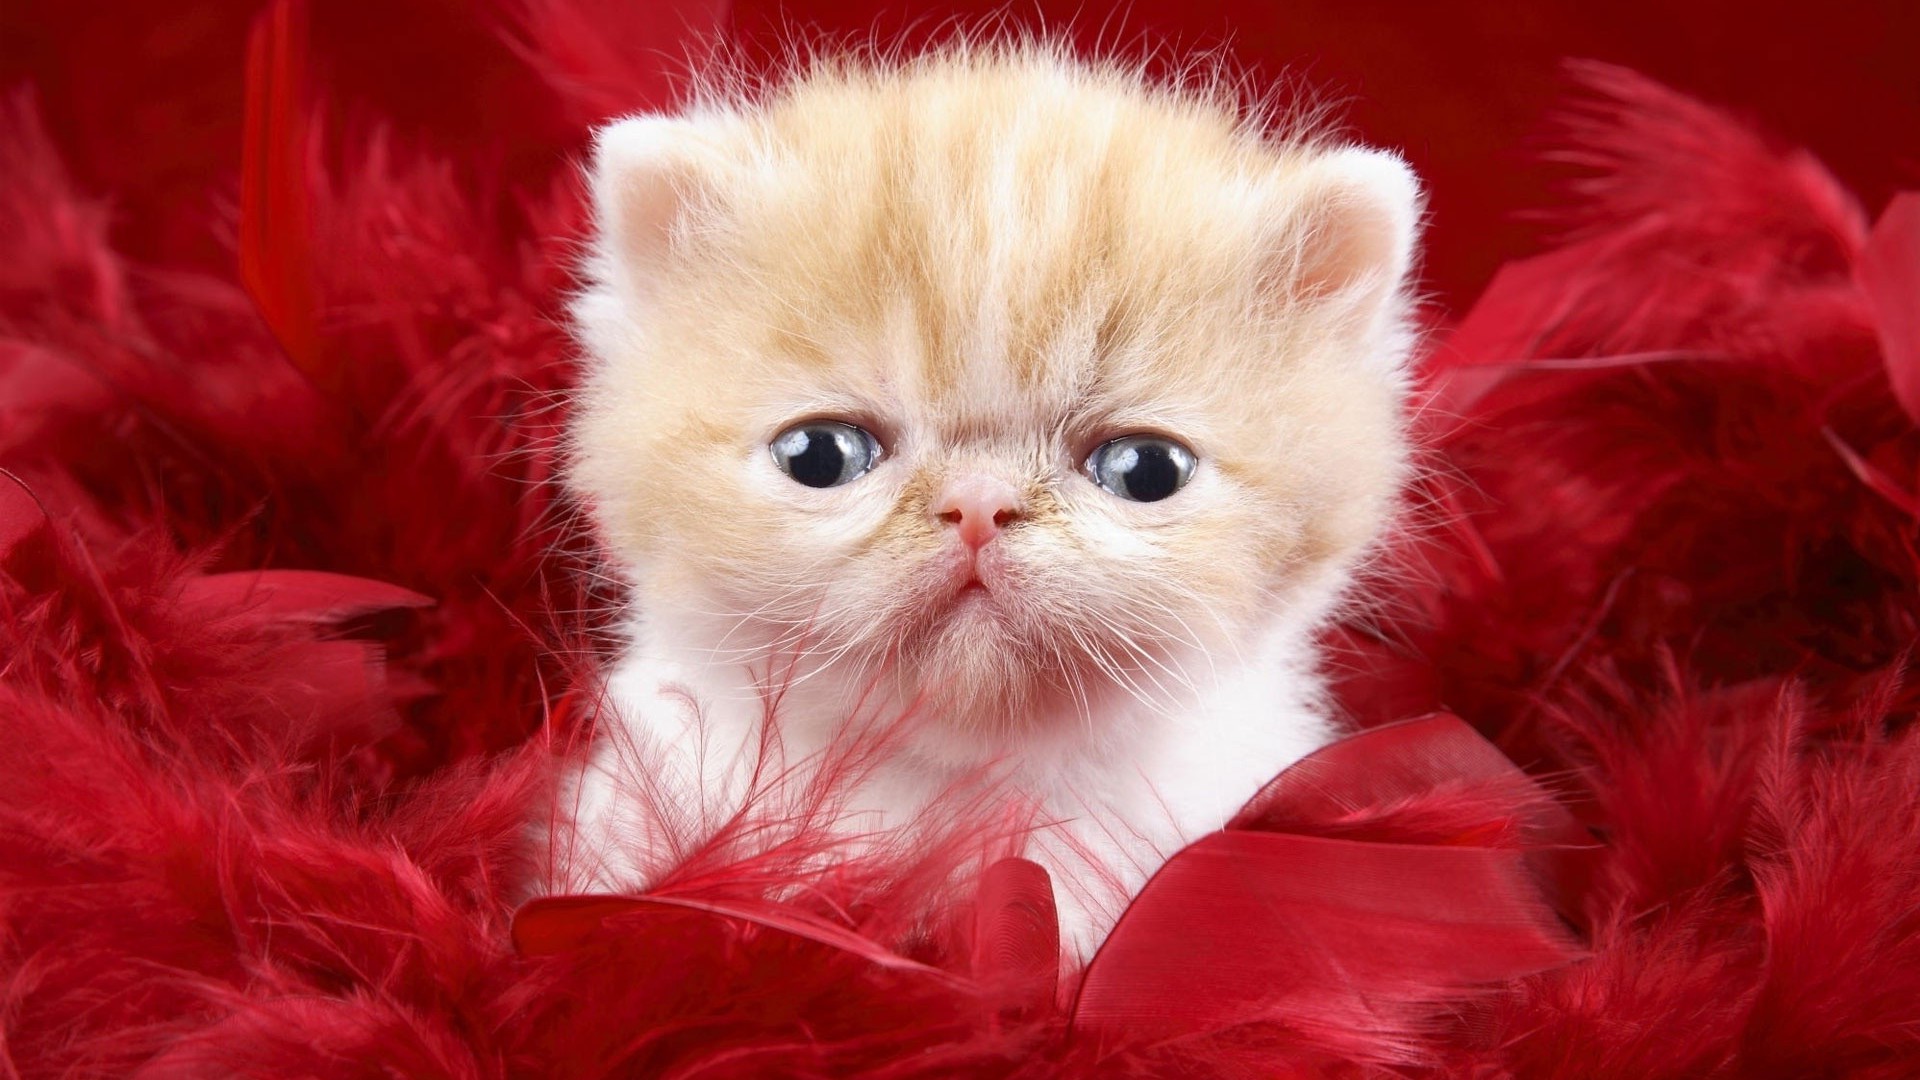 Cute Kitten In Red Feathers Wallpaper